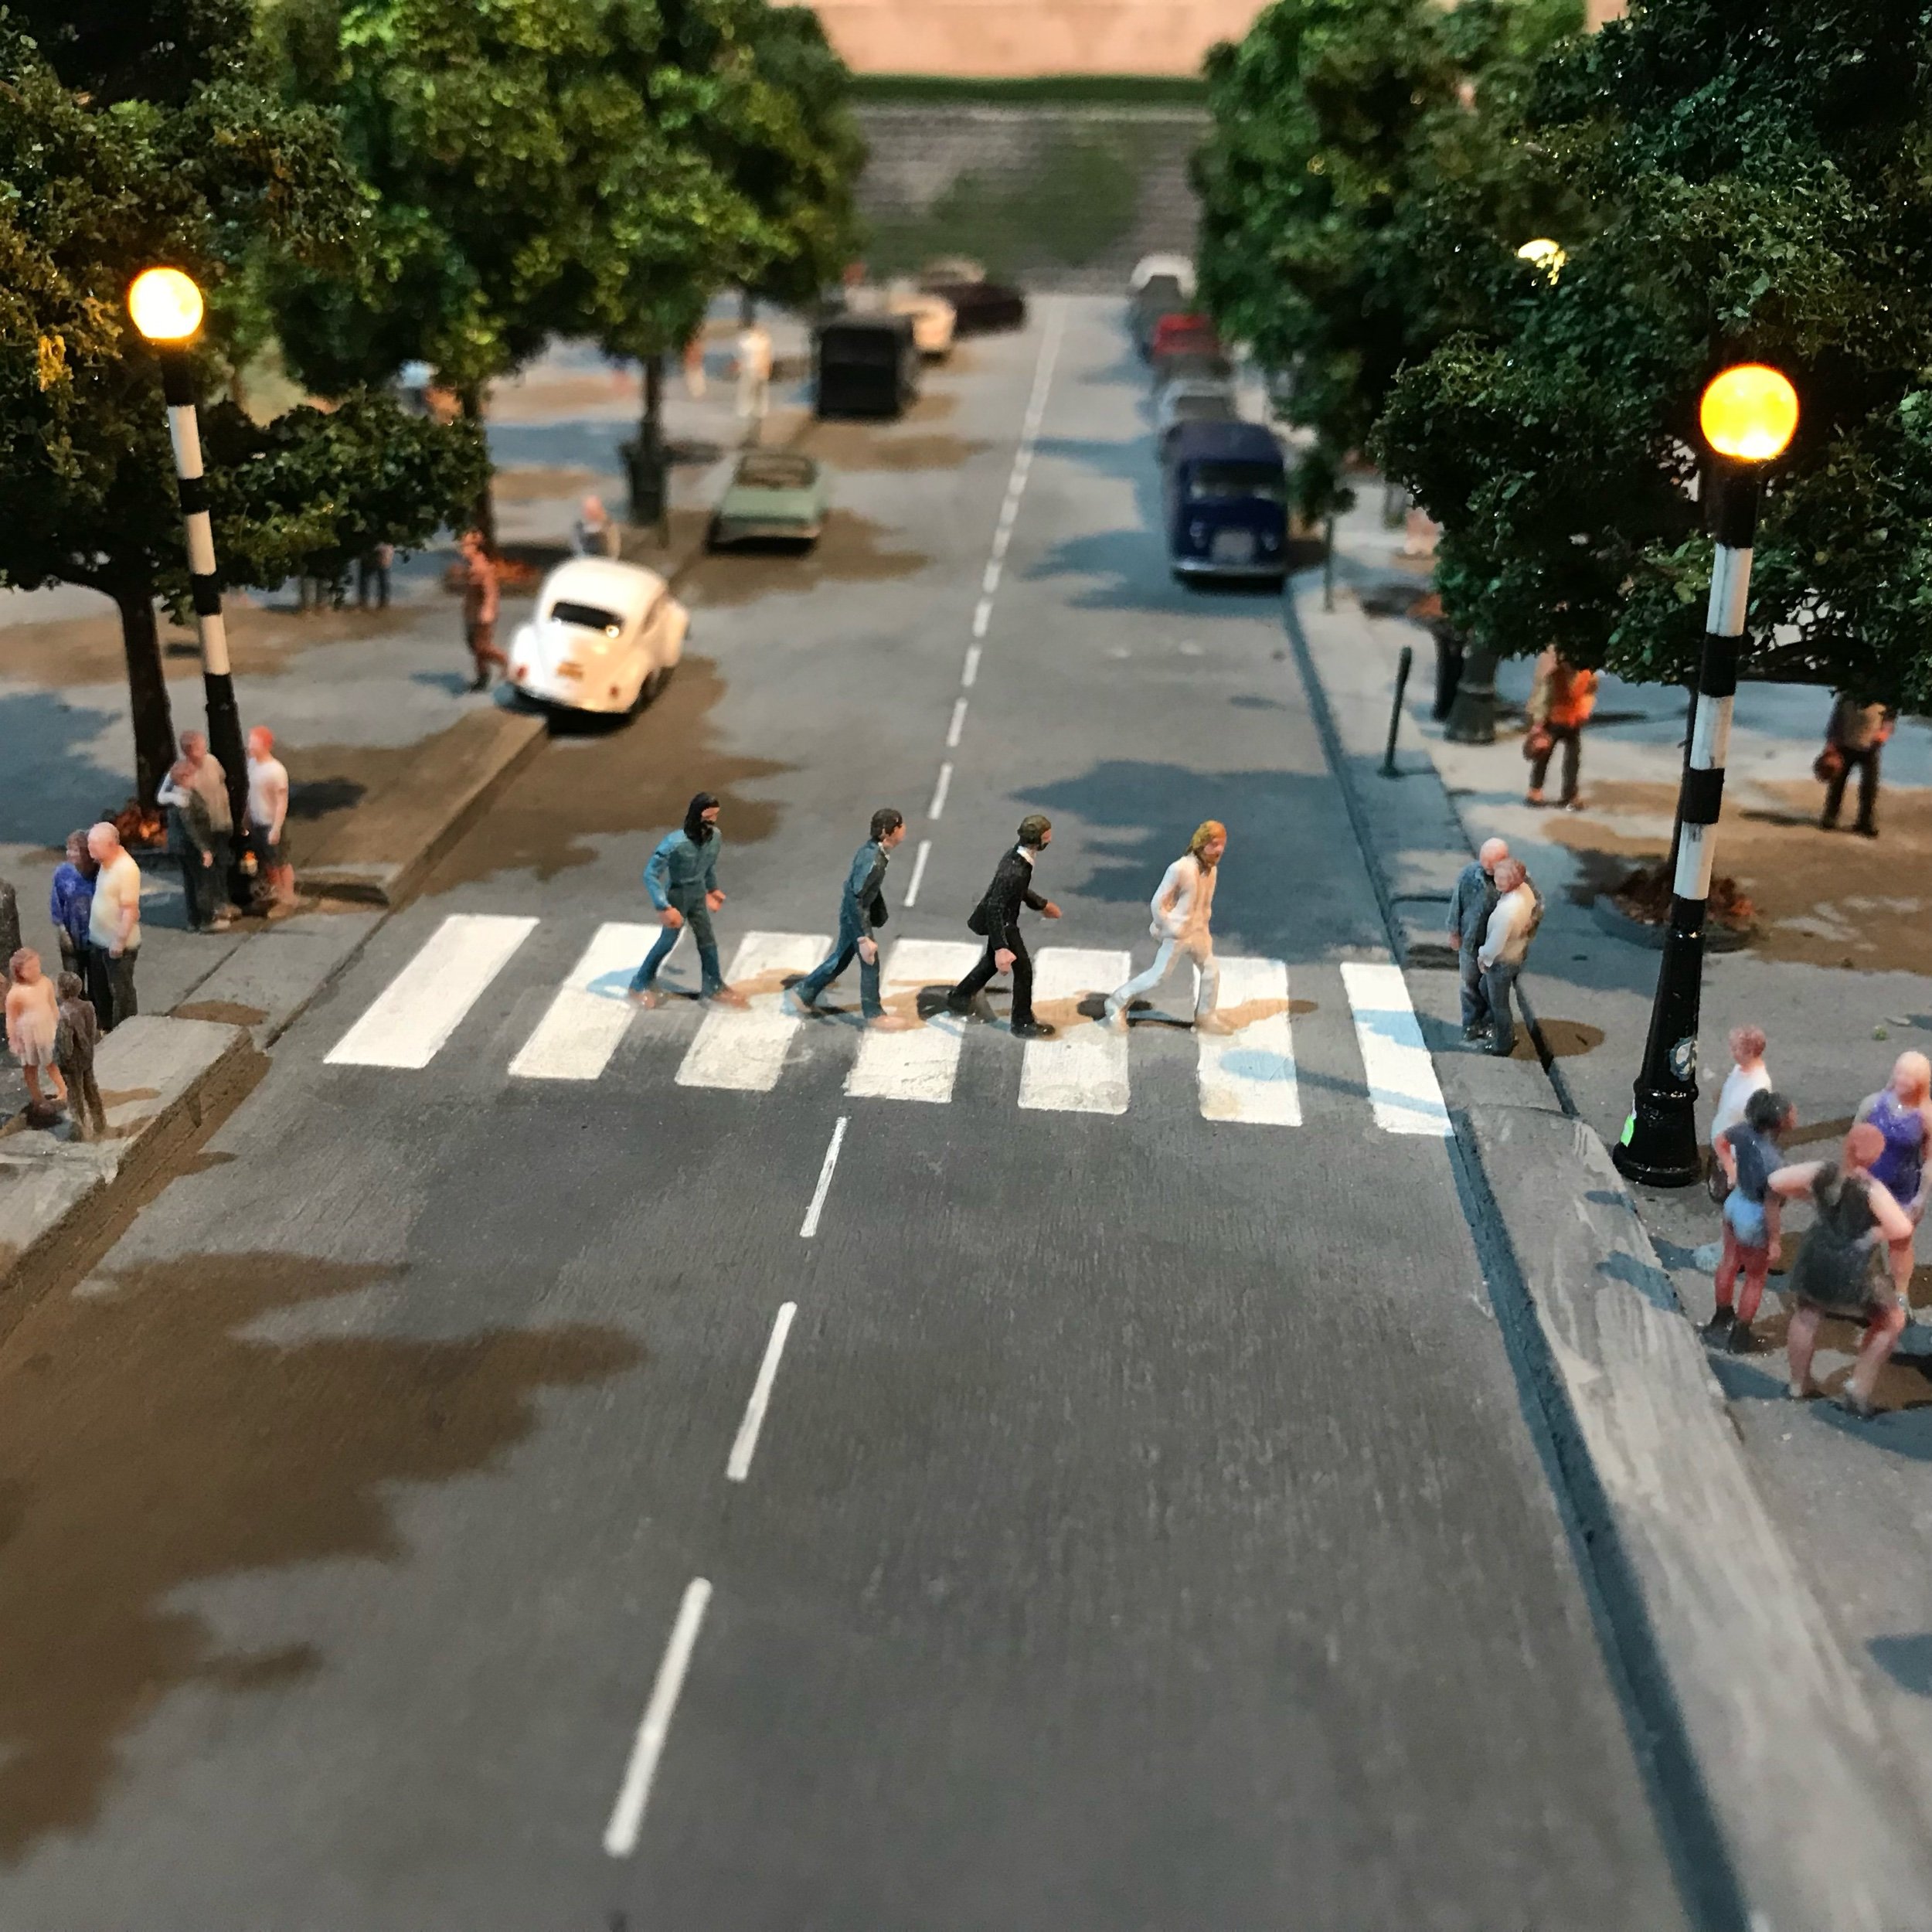 Abbey Road crossing